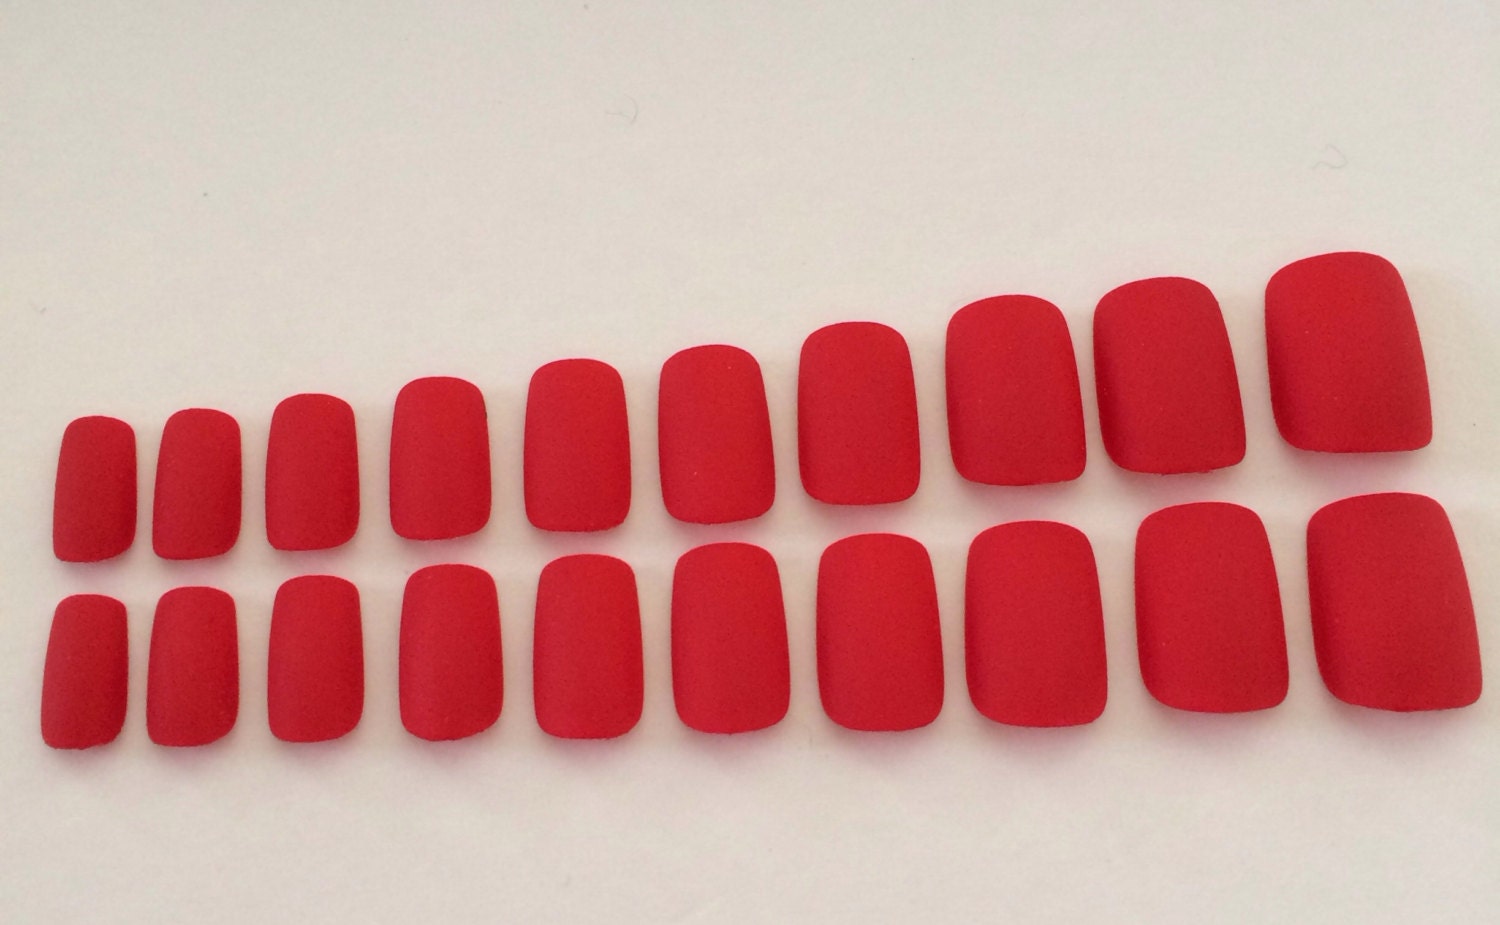 Matte nails red fake nails short square nails | Etsy